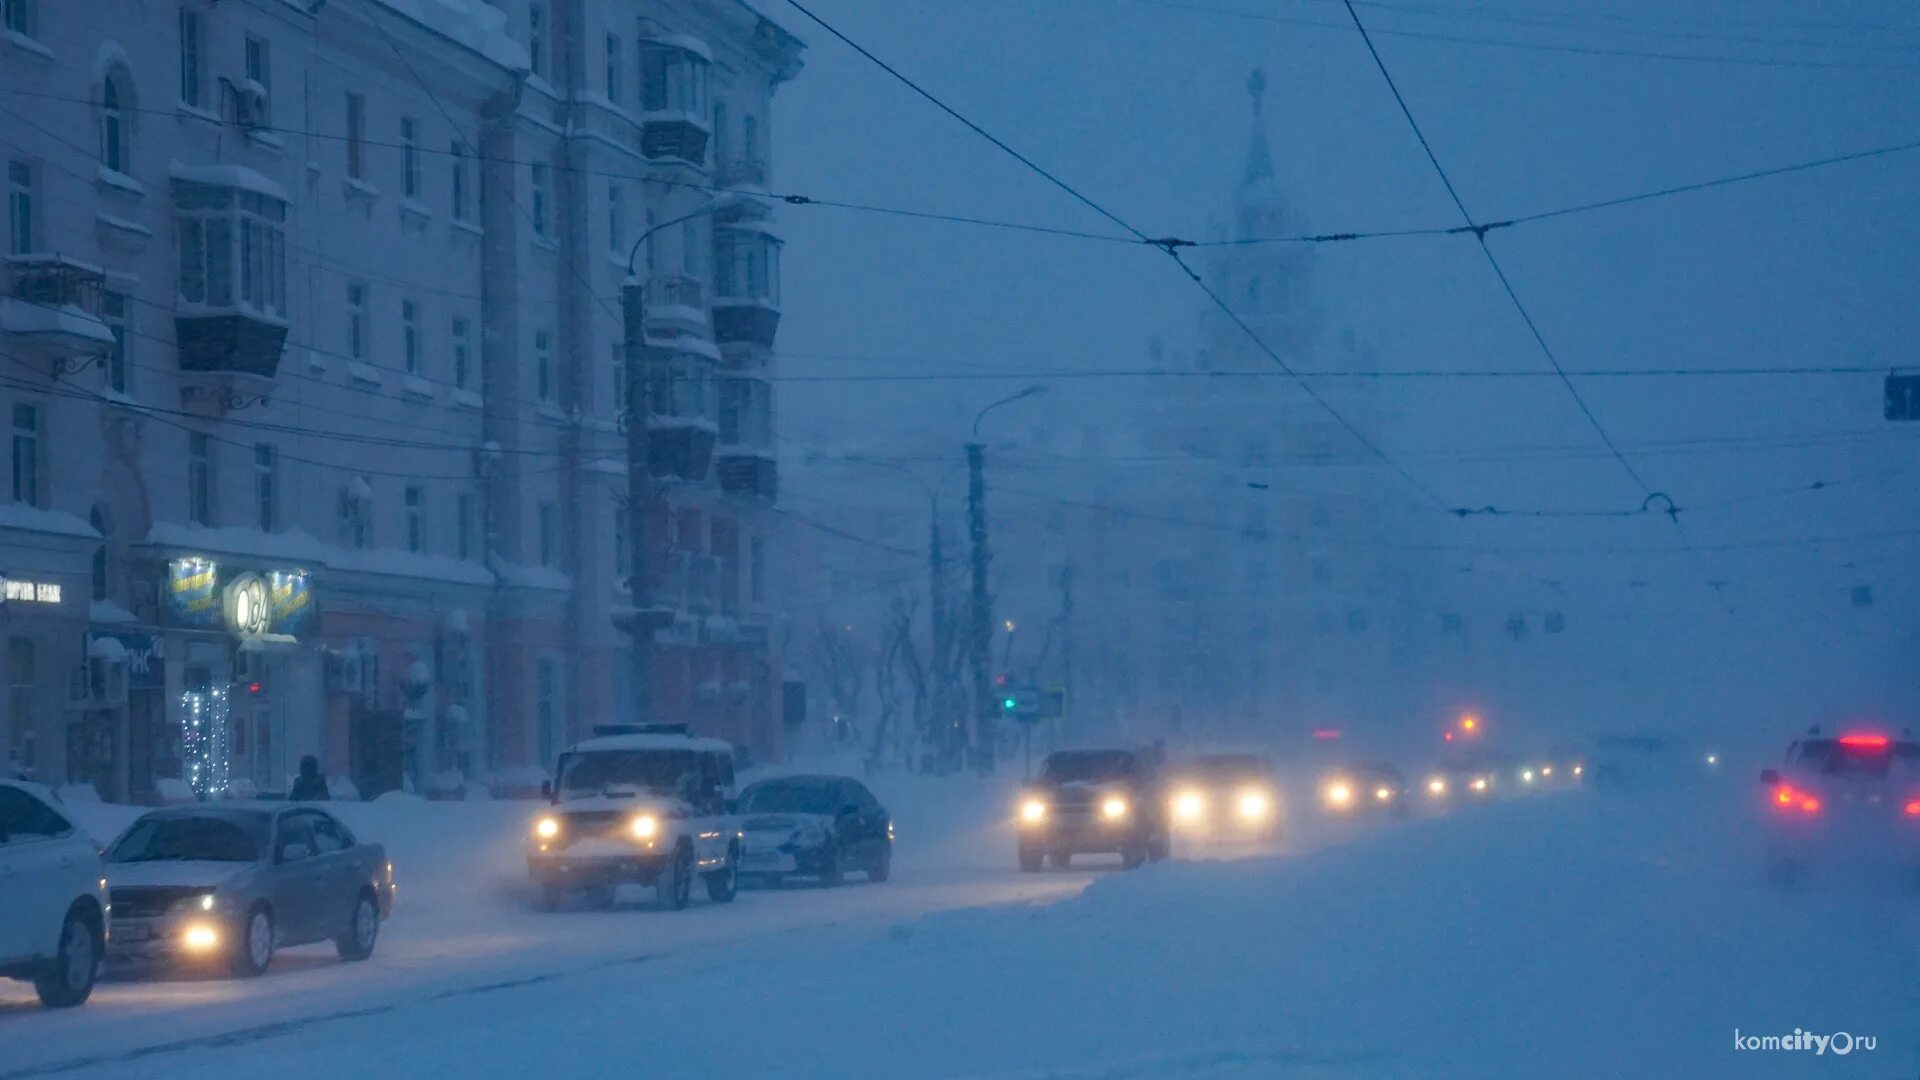 Комсомольск на Амуре снегопад 2014. Комсомольск на Амуре снегопад. Комсомольск-на-Амуре снегопад 2013. Комсомольск на Амуре зима 2013.